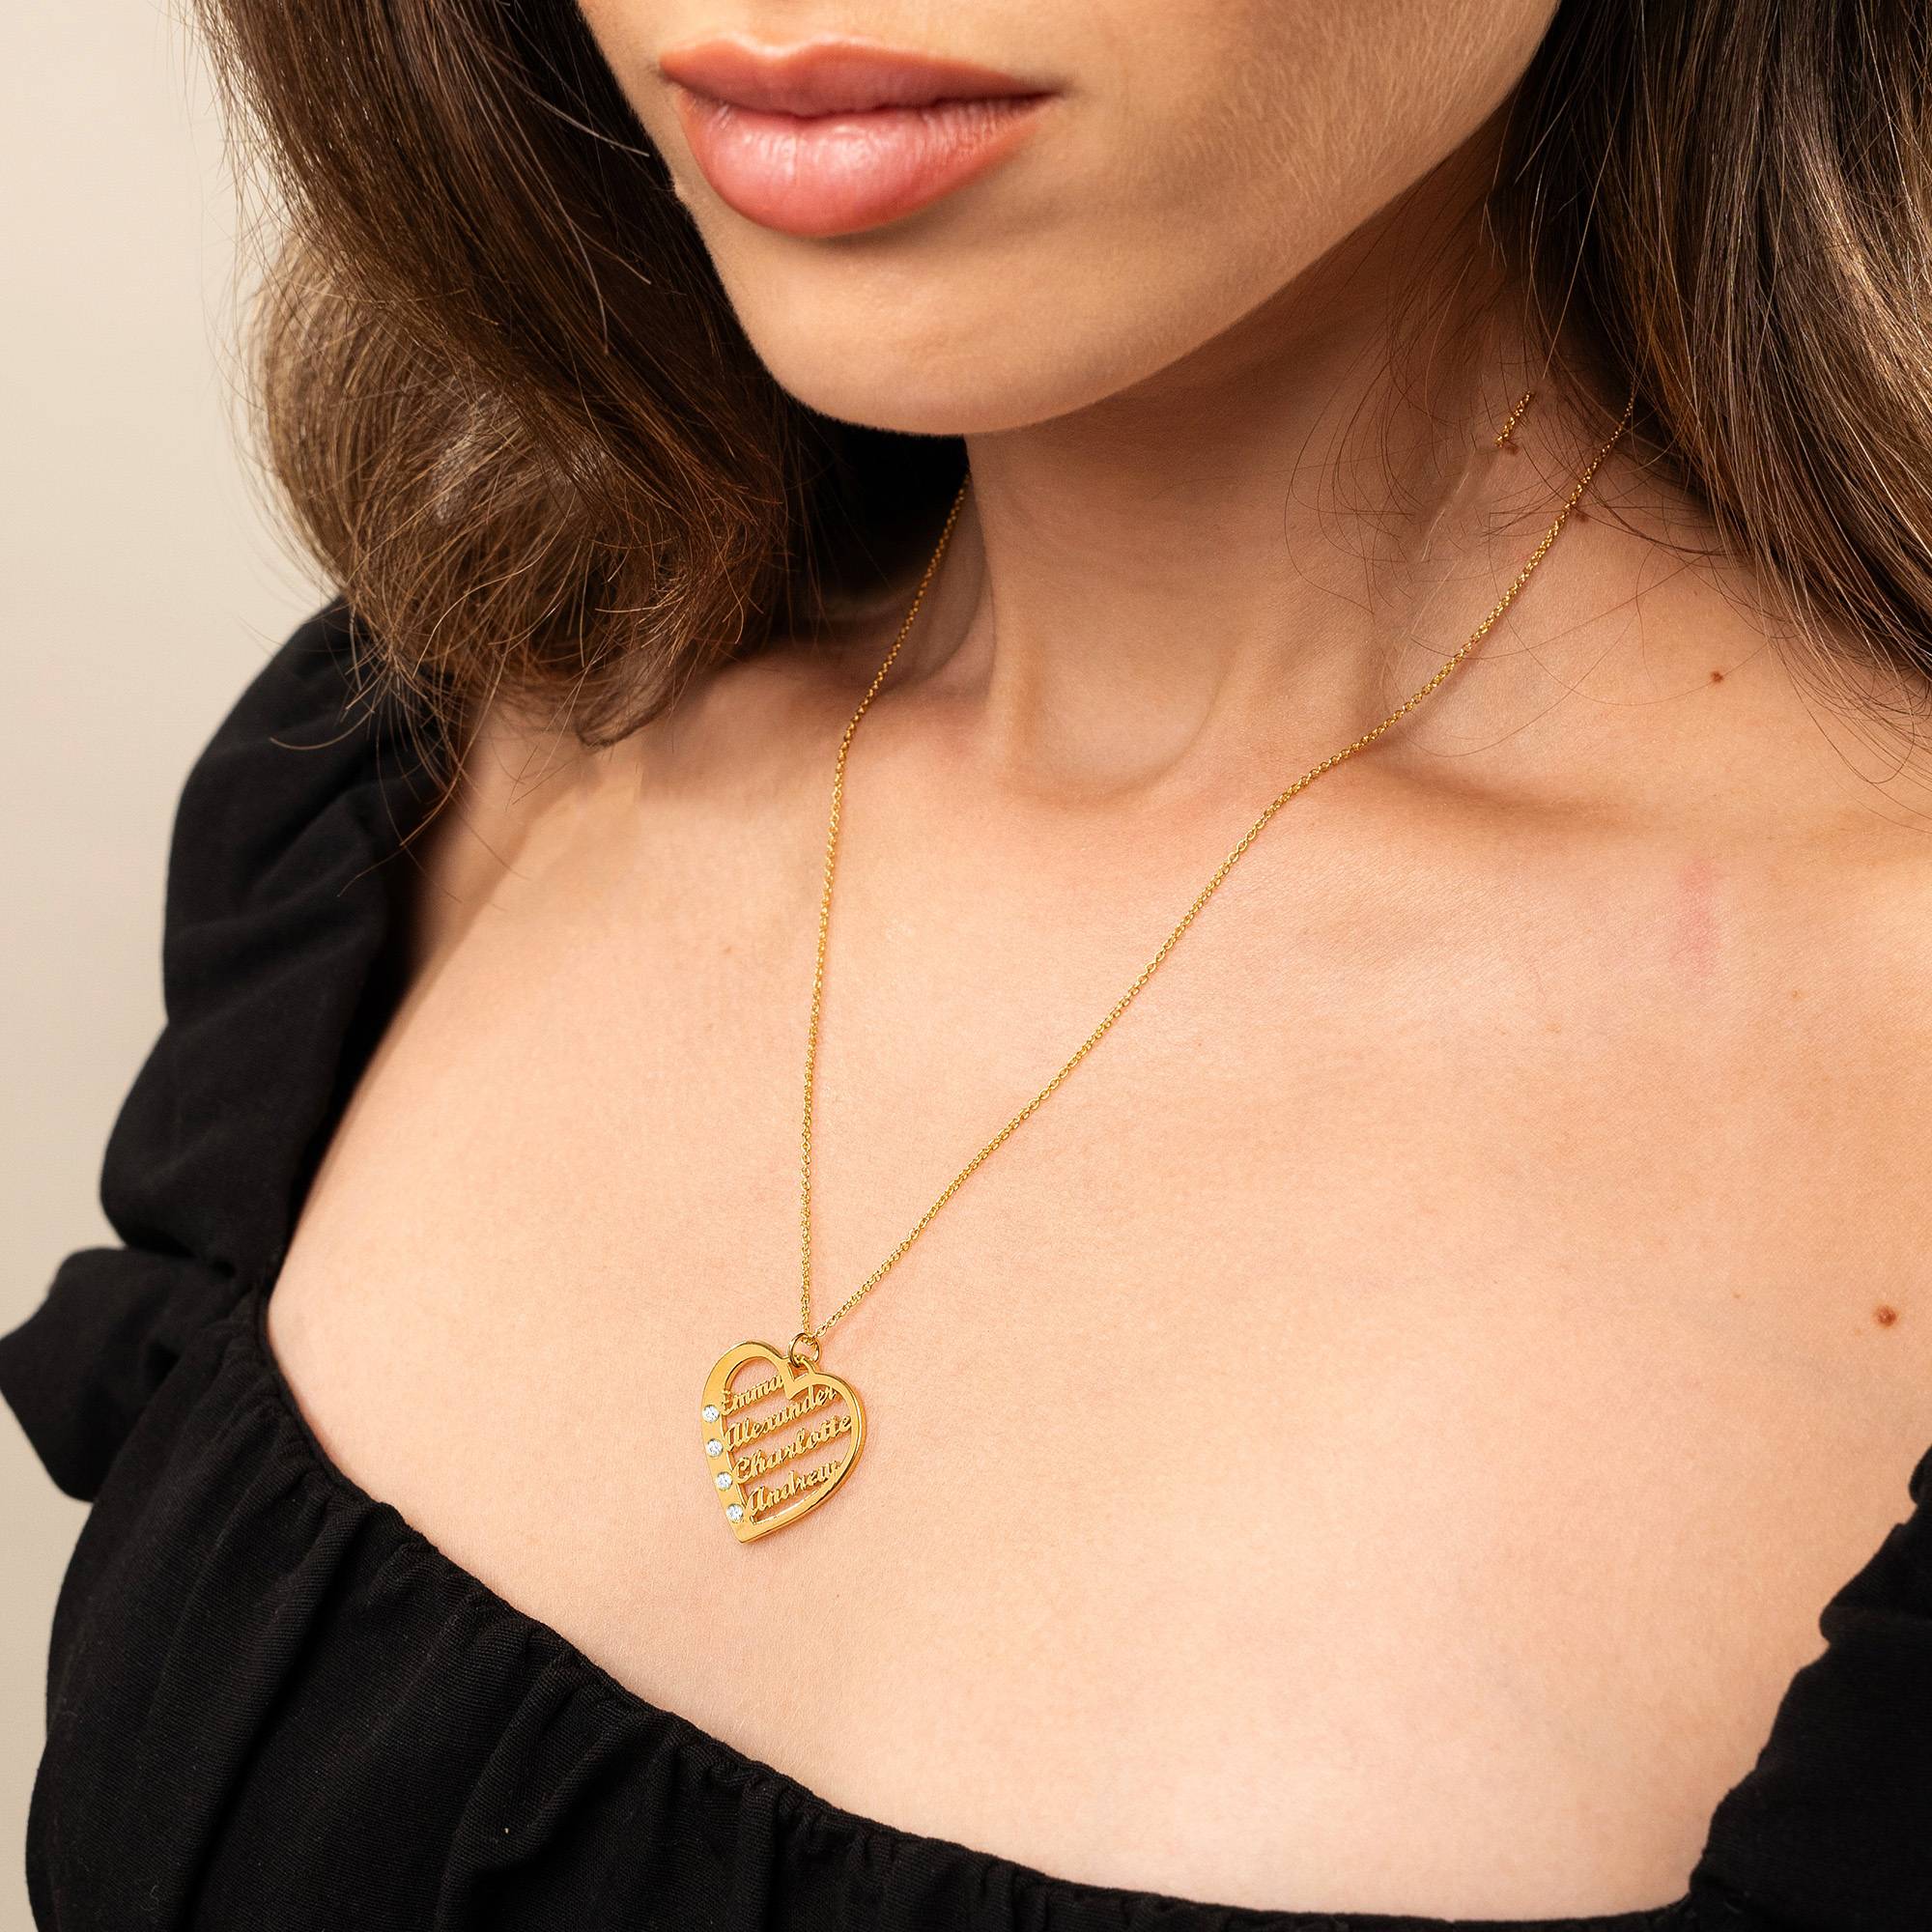 Collar de Corazón Ella con diamante y nombres en Oro Vermeil de 18K-3 foto de producto